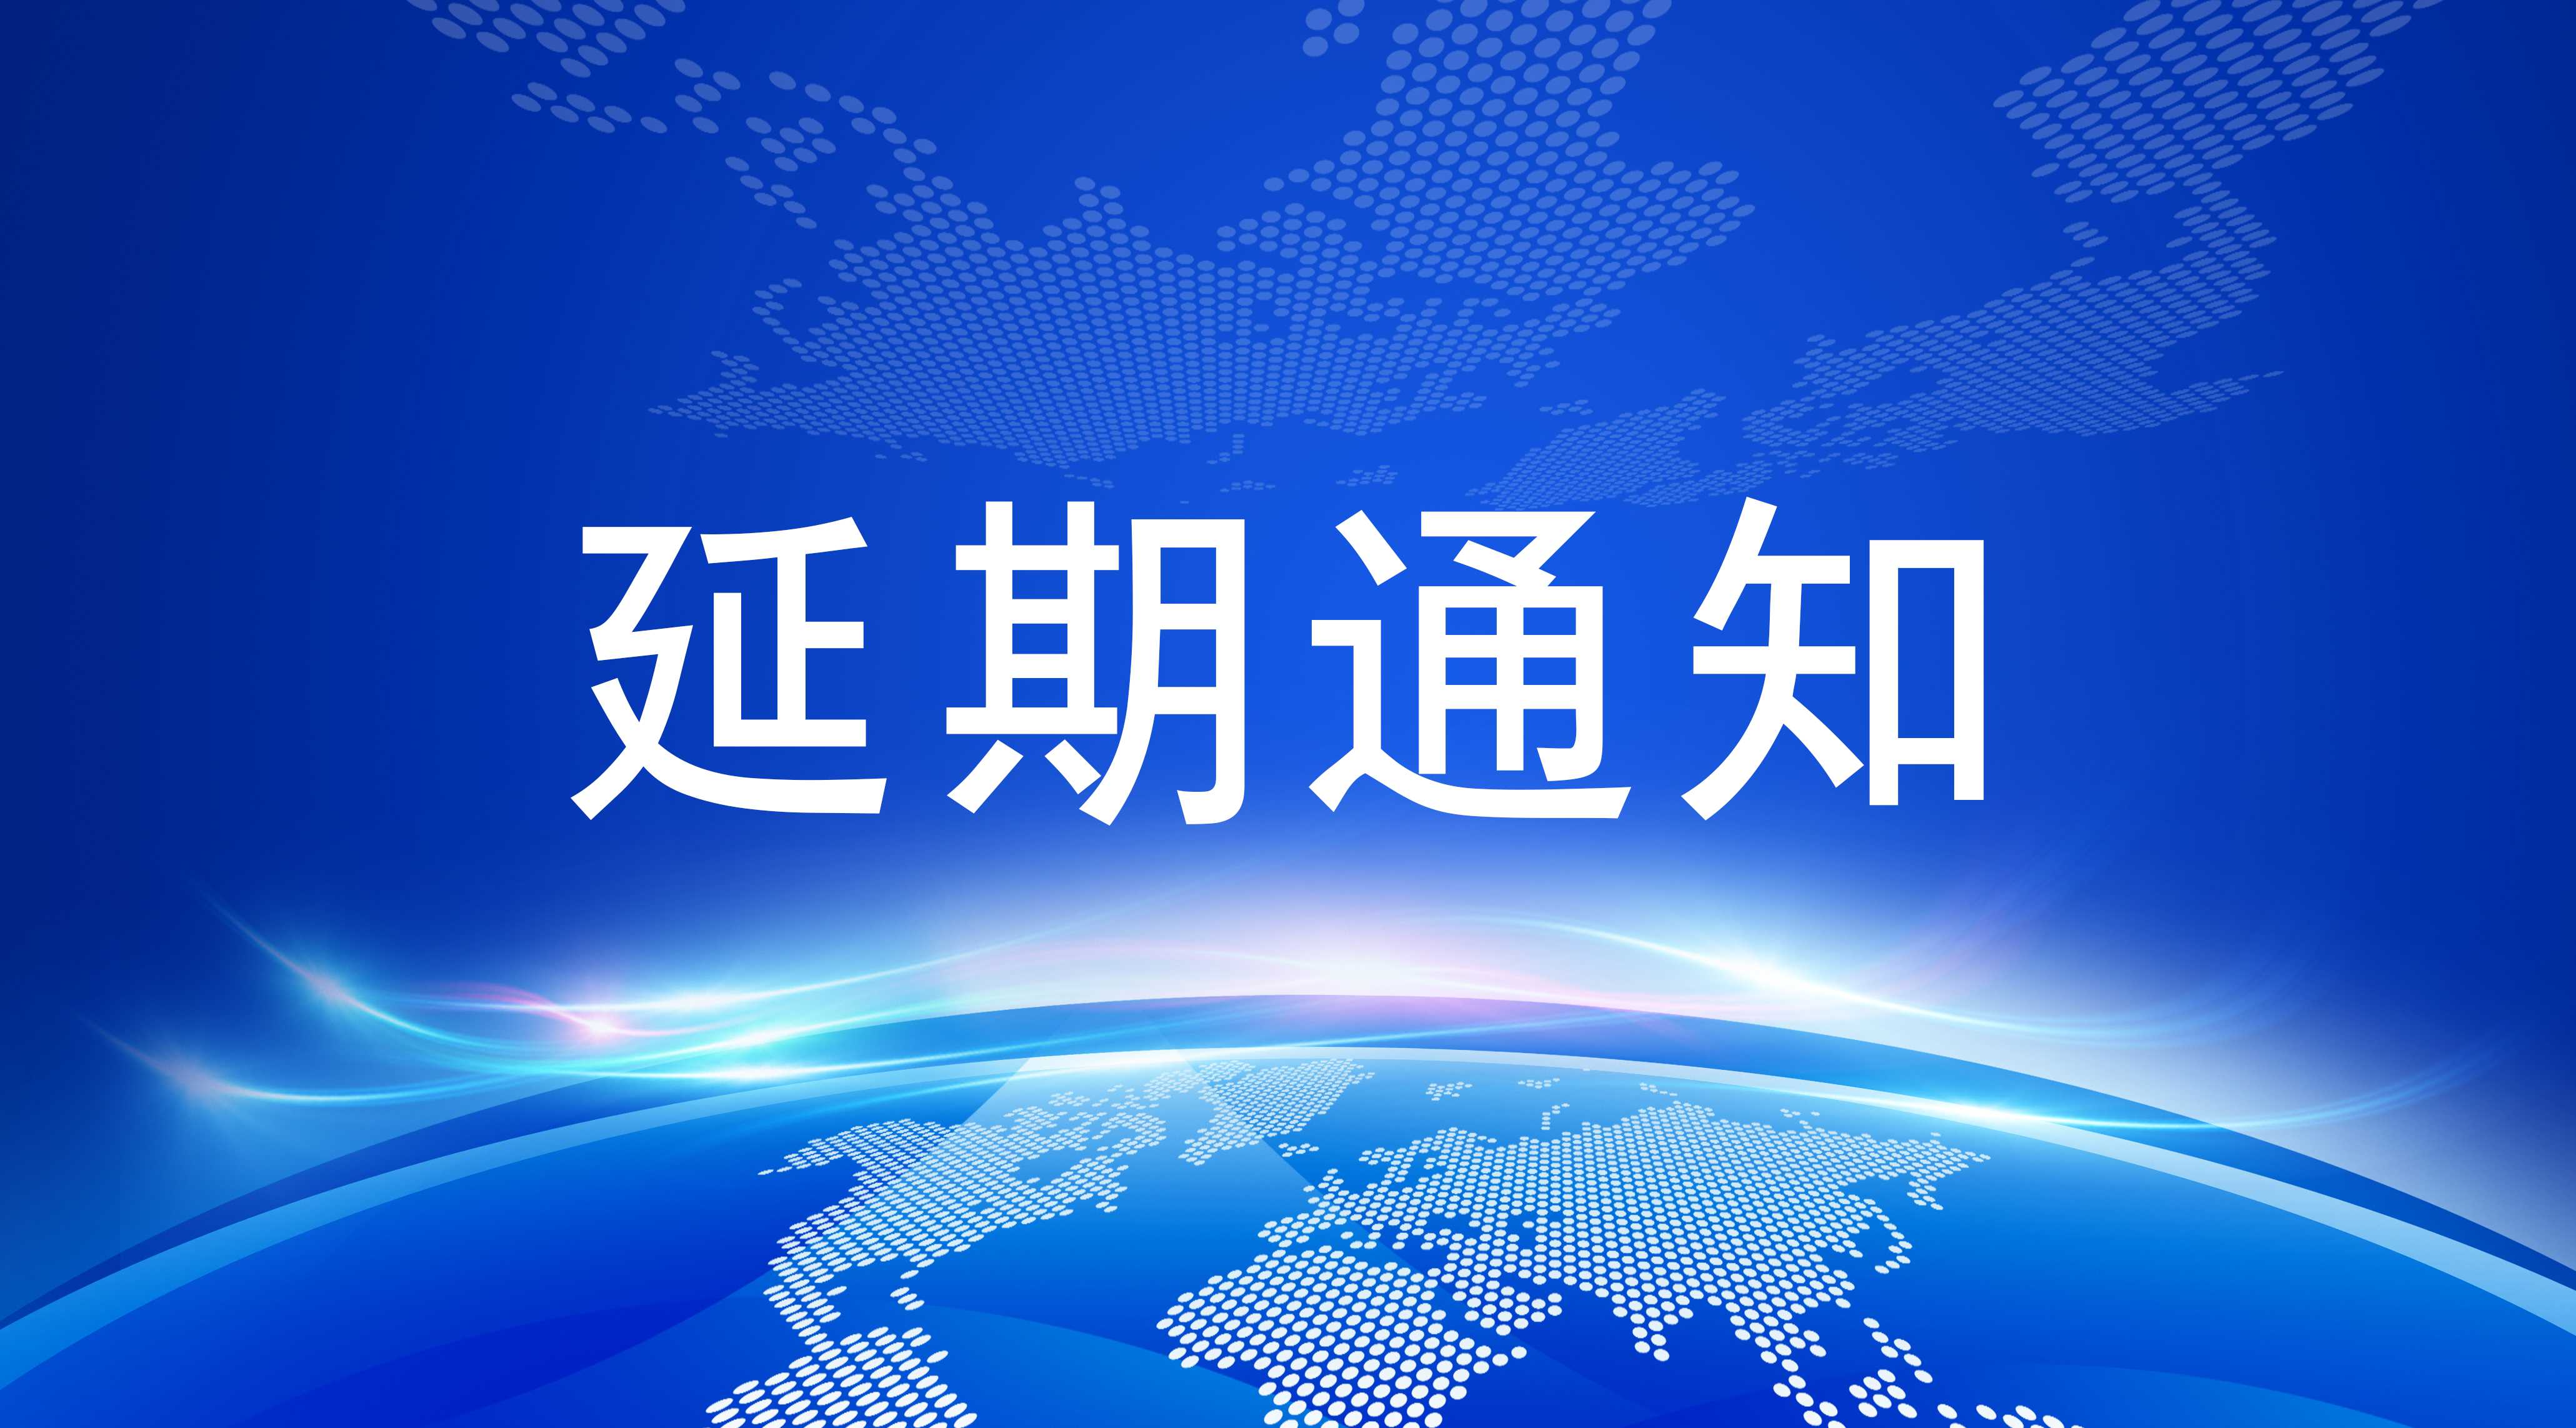 关于 “2022 中国日用化工行业年会” 再次延期召开的通知